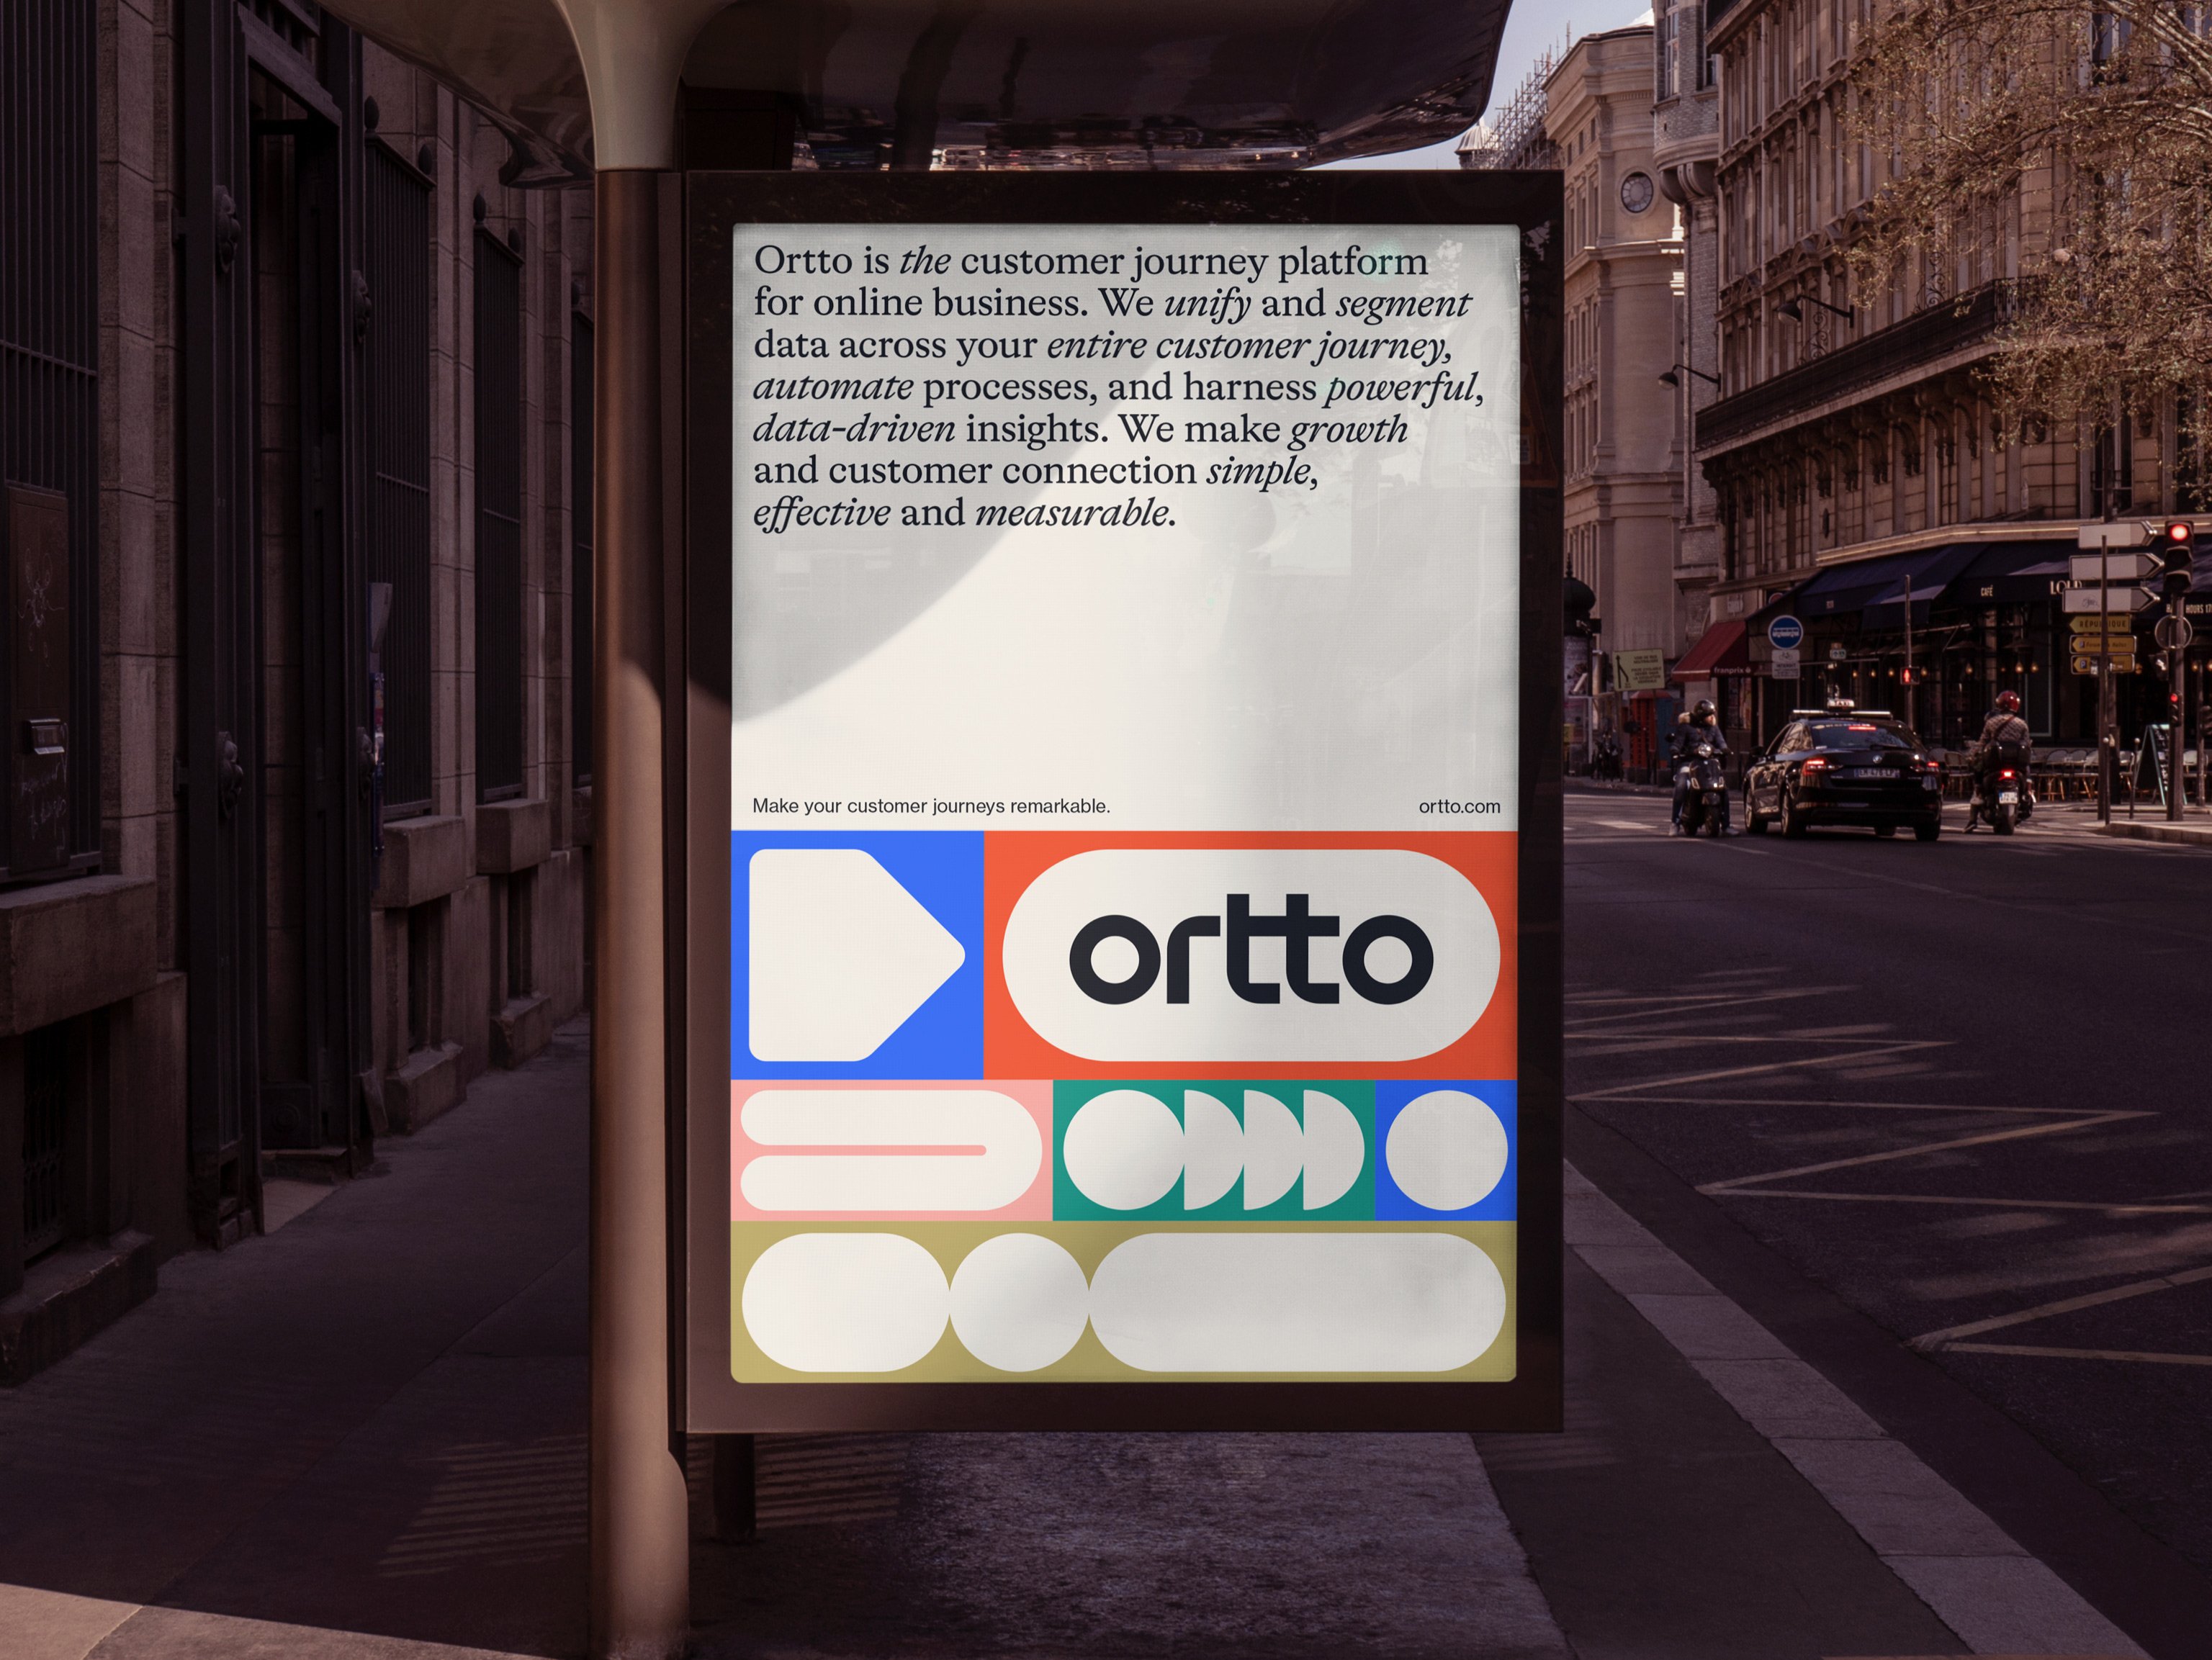 Merkidentiteit en OOH-reclameposter voor bedrijf Ortto op het gebied van automatisering, analyse en klantreizen, ontworpen door Christopher Doyle & Co